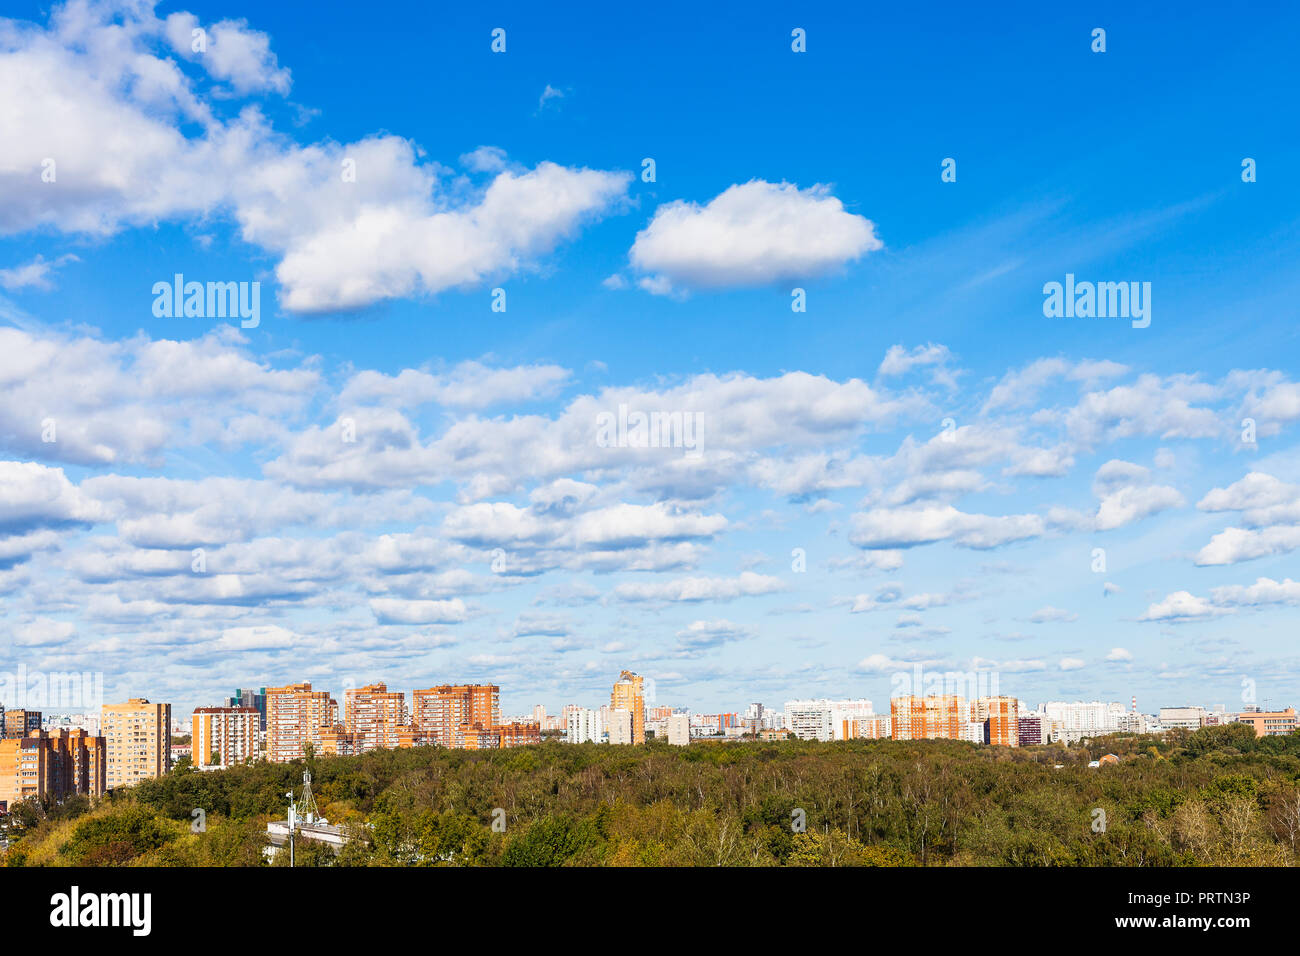 Viele weiße Wolken im blauen Himmel über Häuser und städtischen Park im sonnigen Herbsttag Stockfoto